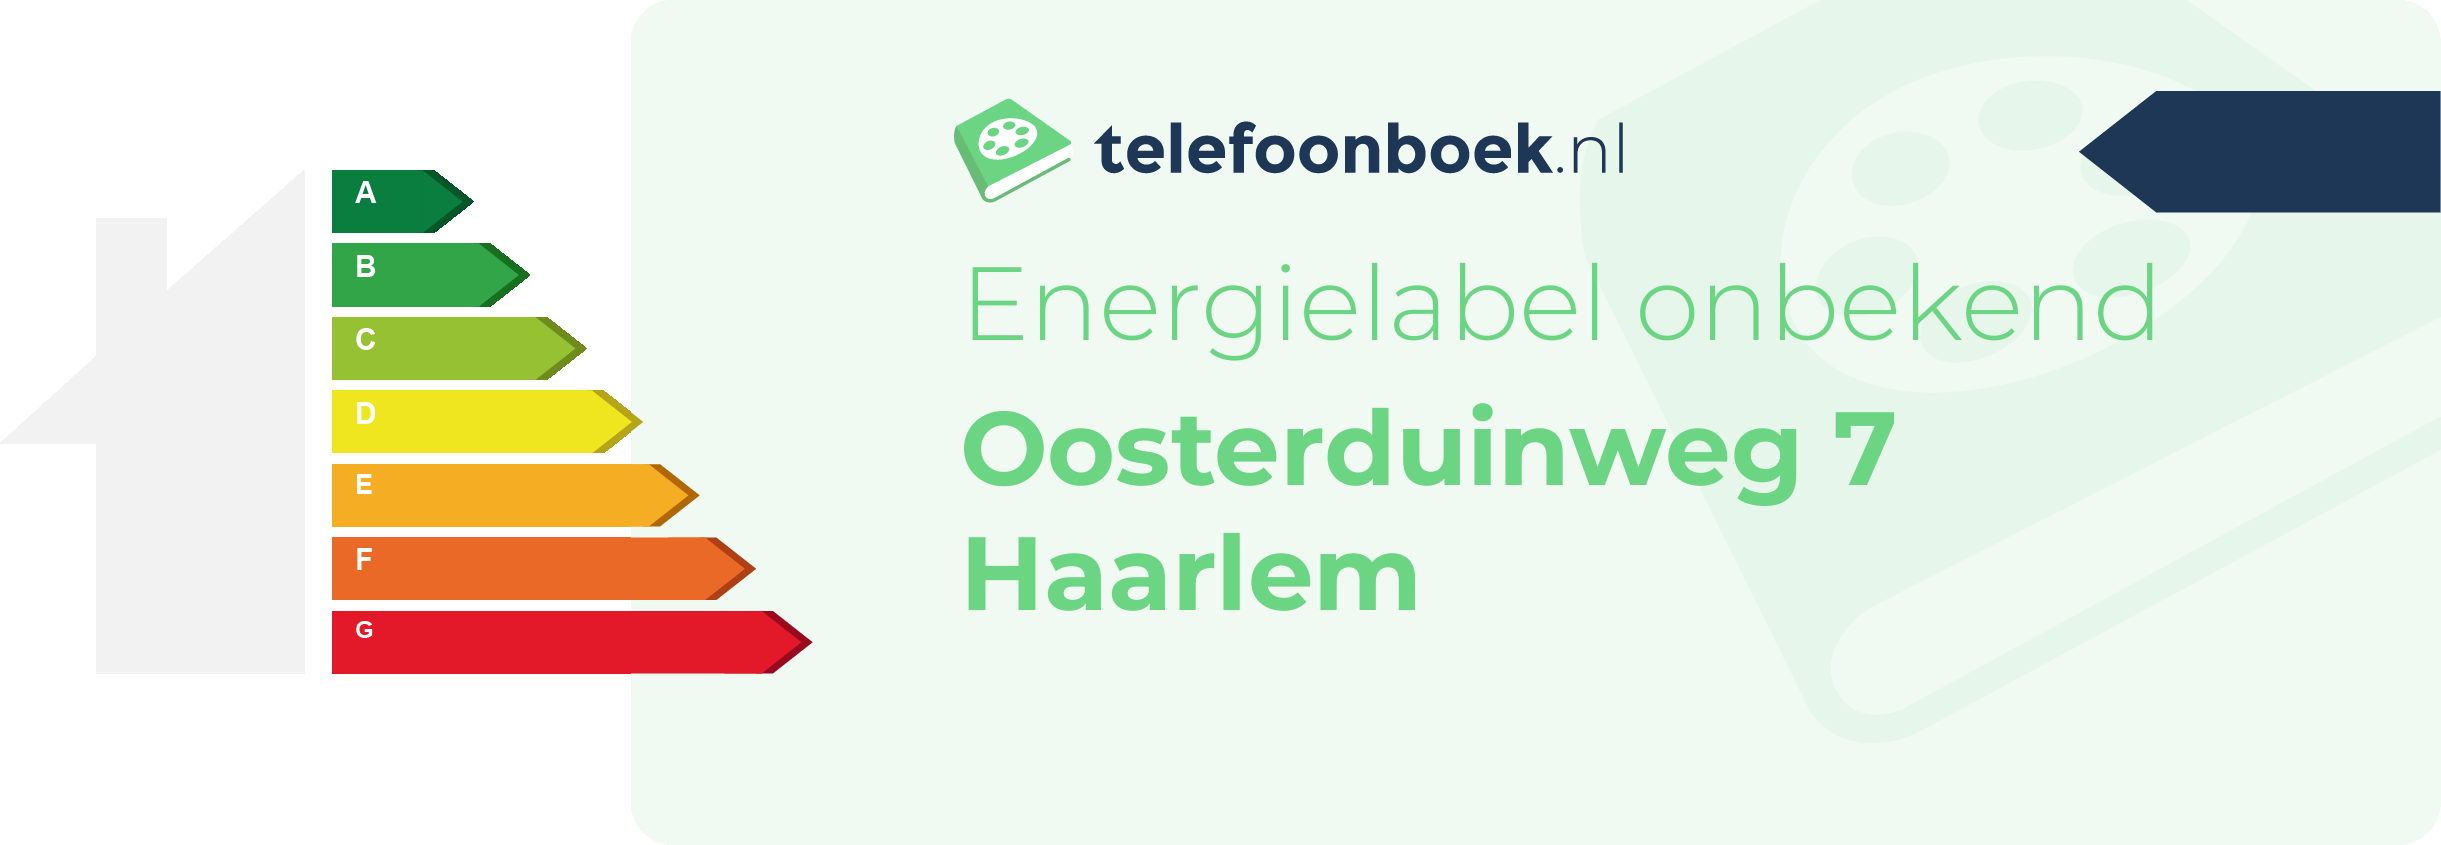 Energielabel Oosterduinweg 7 Haarlem